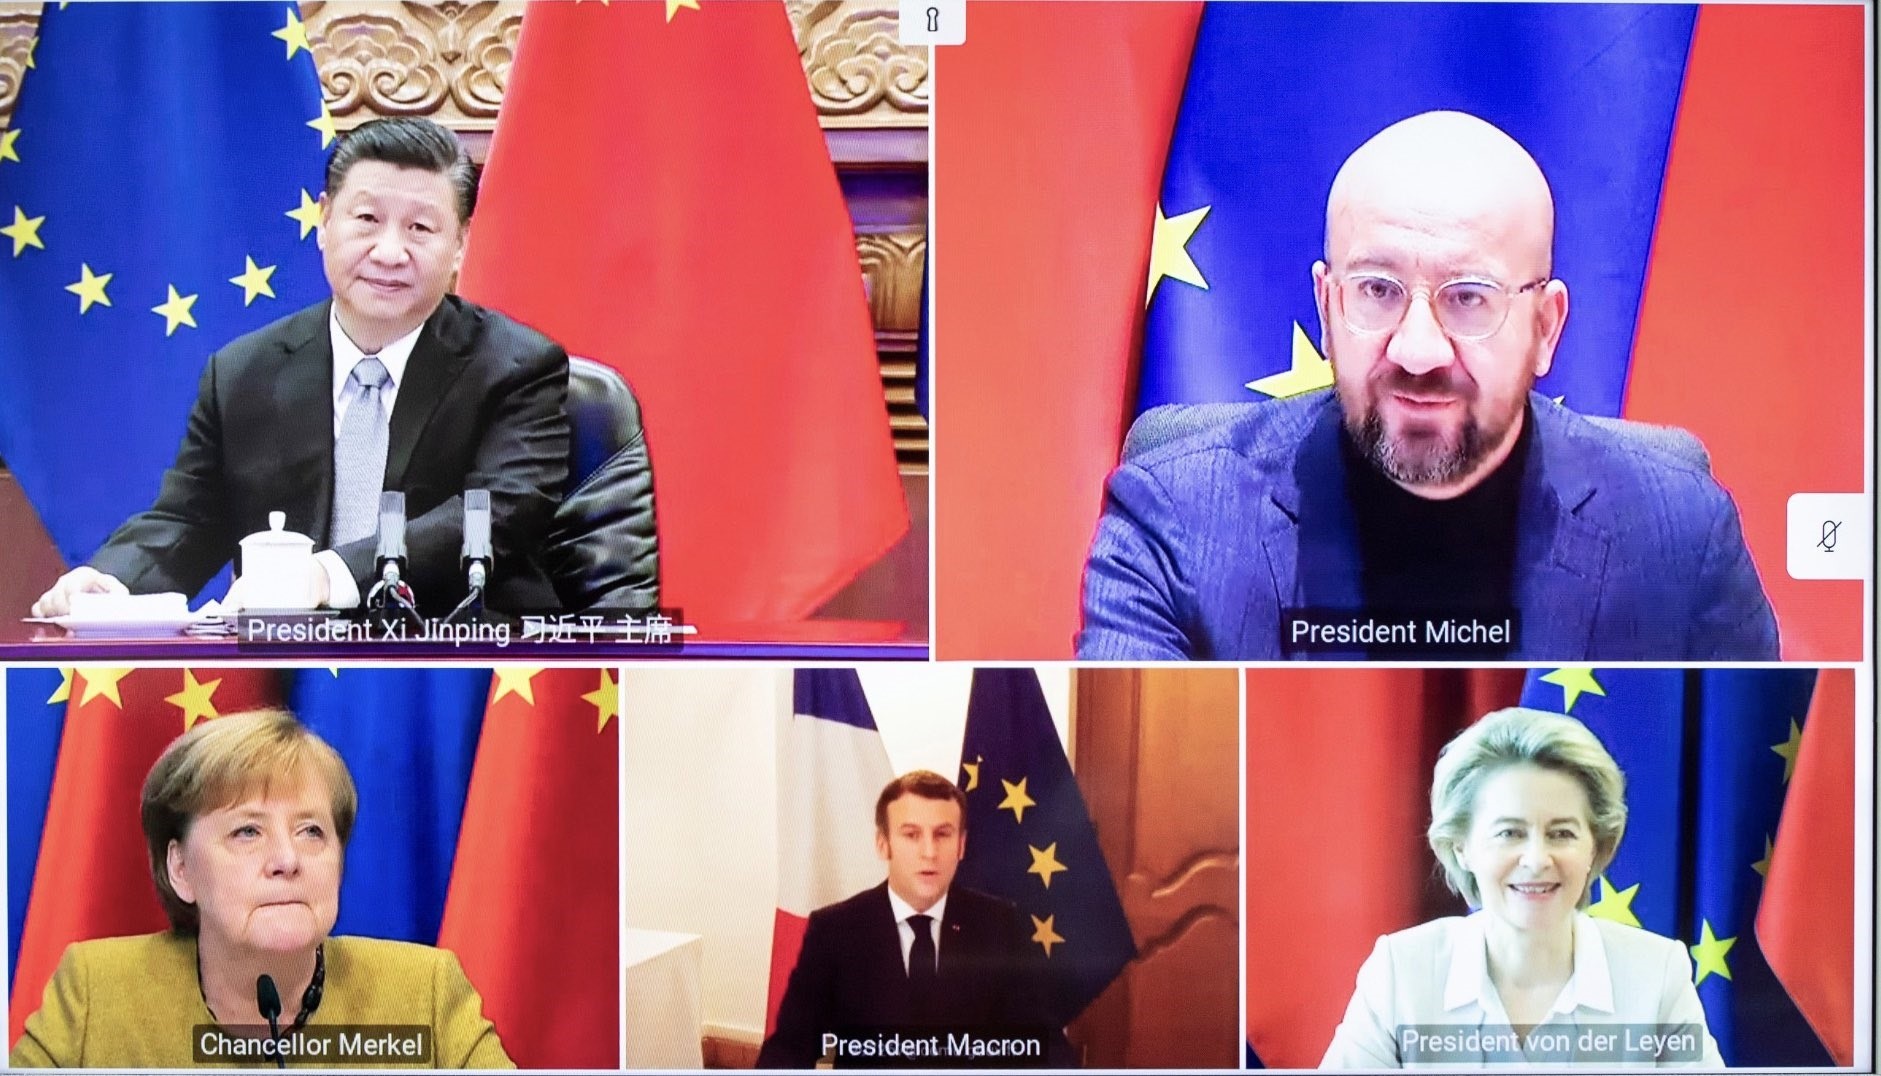 Reunión por videoconferencia celebrada el 30 de diciembre de 2020 entre Charles Michel, Ursula von der Leyen, Angela Merkel, Emmanuel Macron y Xi Jinping (Europa Press)